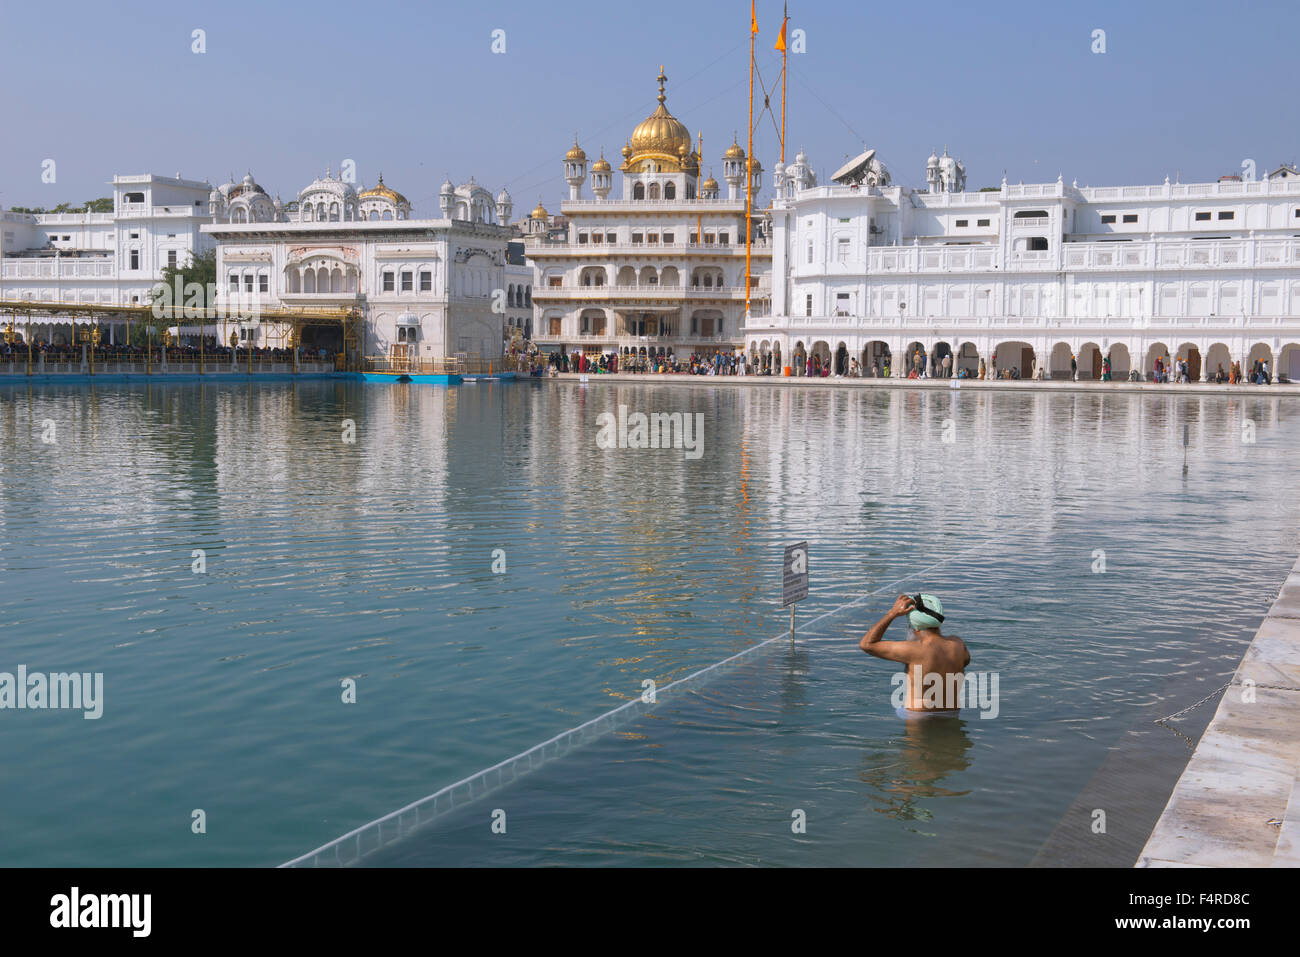 L'Asie, l'Inde, Punjab, Amritsar, temple d'Or, la religion, sikh, culte, saint, Pilgrim, étang, rituel, homme, baignoire, salle de bain Banque D'Images